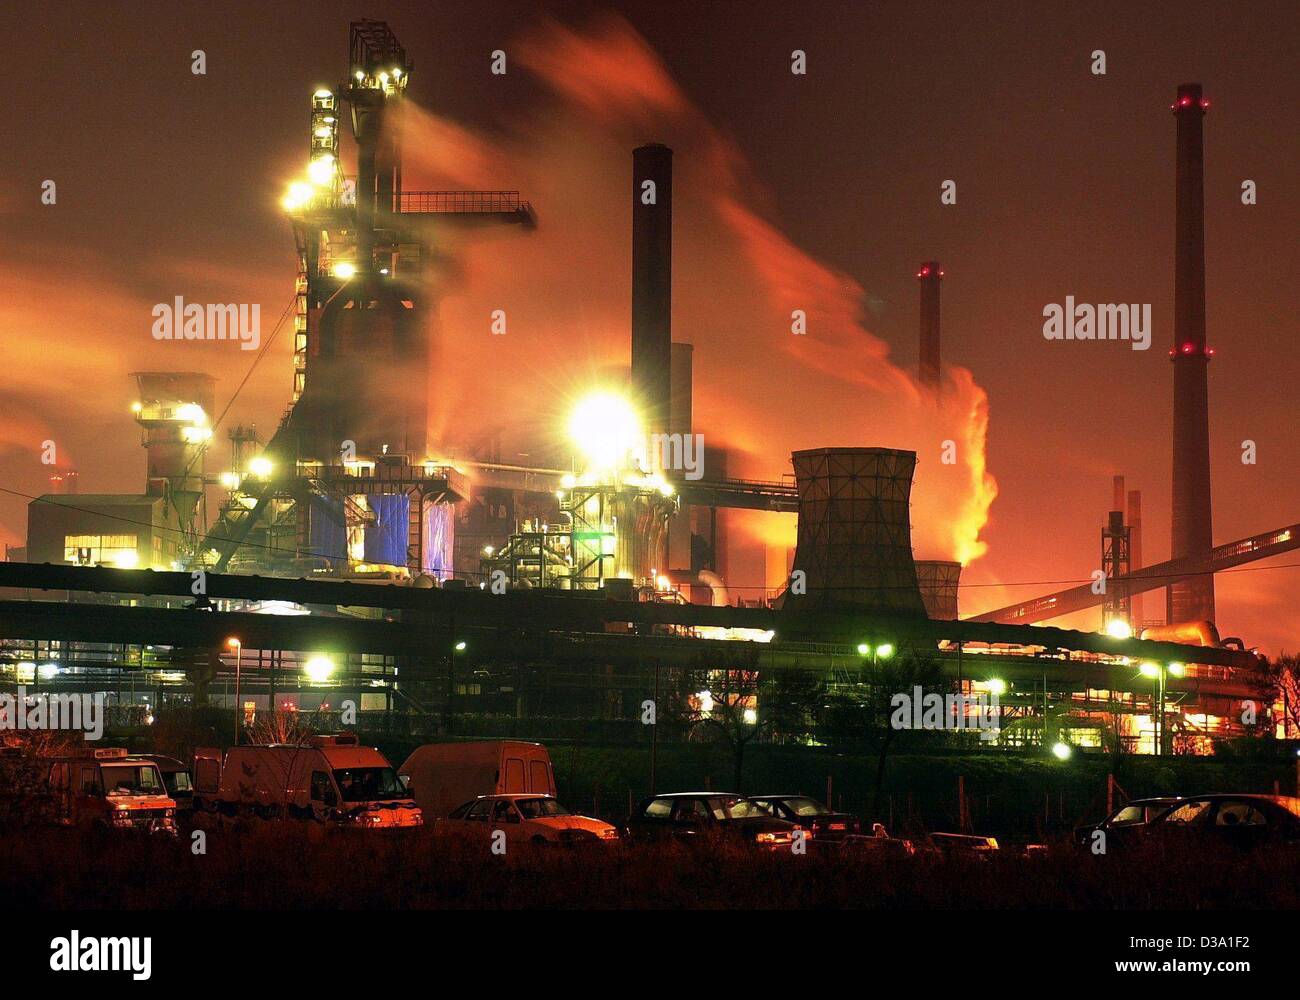 (Dpa) - il mulino di acciaio di acciaio tedesco Gruppo ThyssenKrupp a Duisburg, 11 gennaio 2001. Di notte le enormi crogioli illumina il cielo in rosso infuocato. Misurazione di 12 chilometri quadrati, l'opera di carpenteria metallica è uno della Germania più grandi impianti industriali. Foto Stock